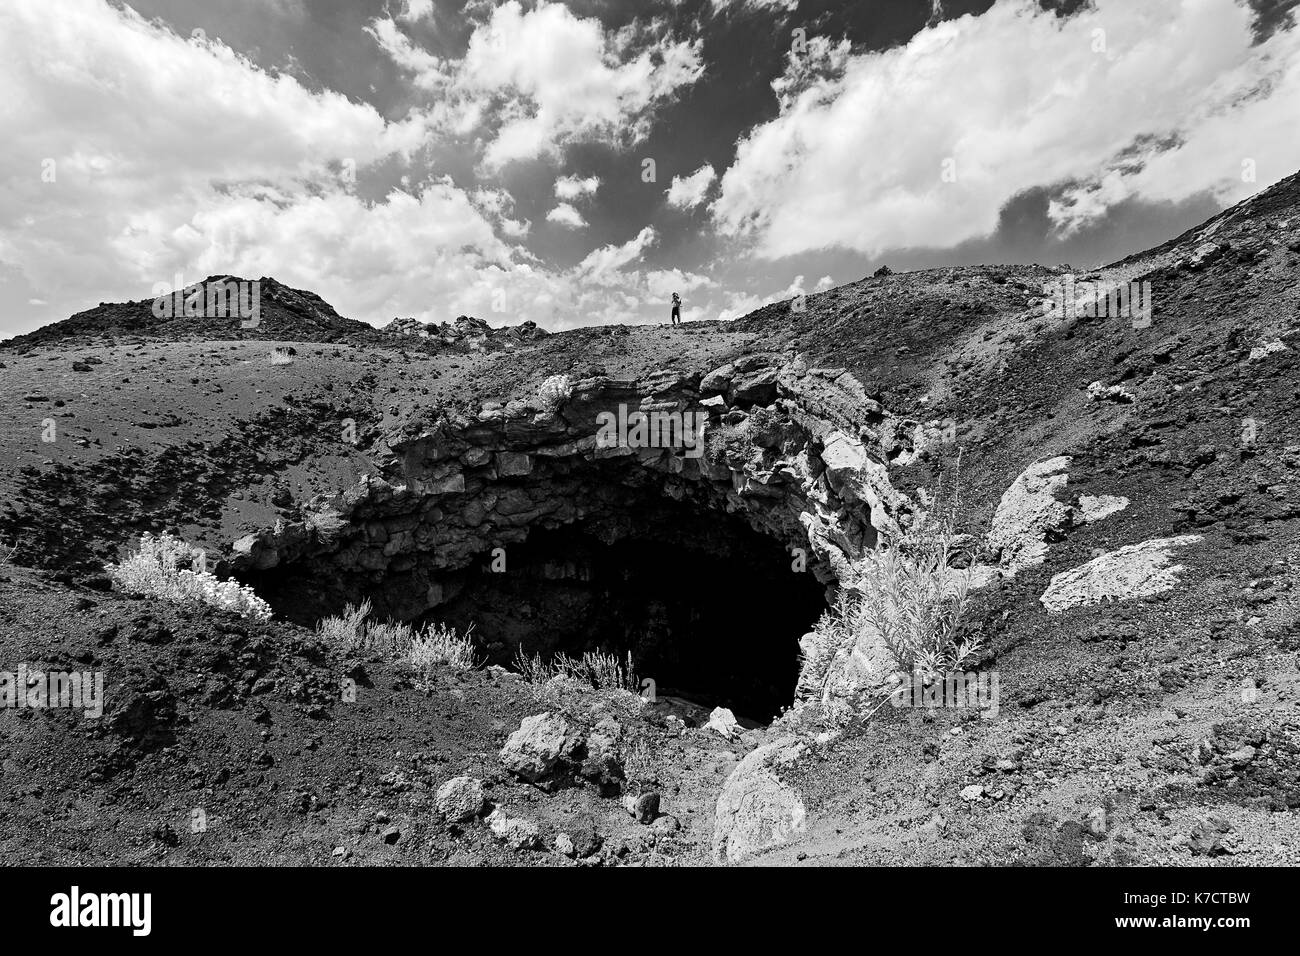 Paysage en noir et blanc. Une personne de prendre une photo sur un voyage à l'Etna, en Sicile, Italie Banque D'Images